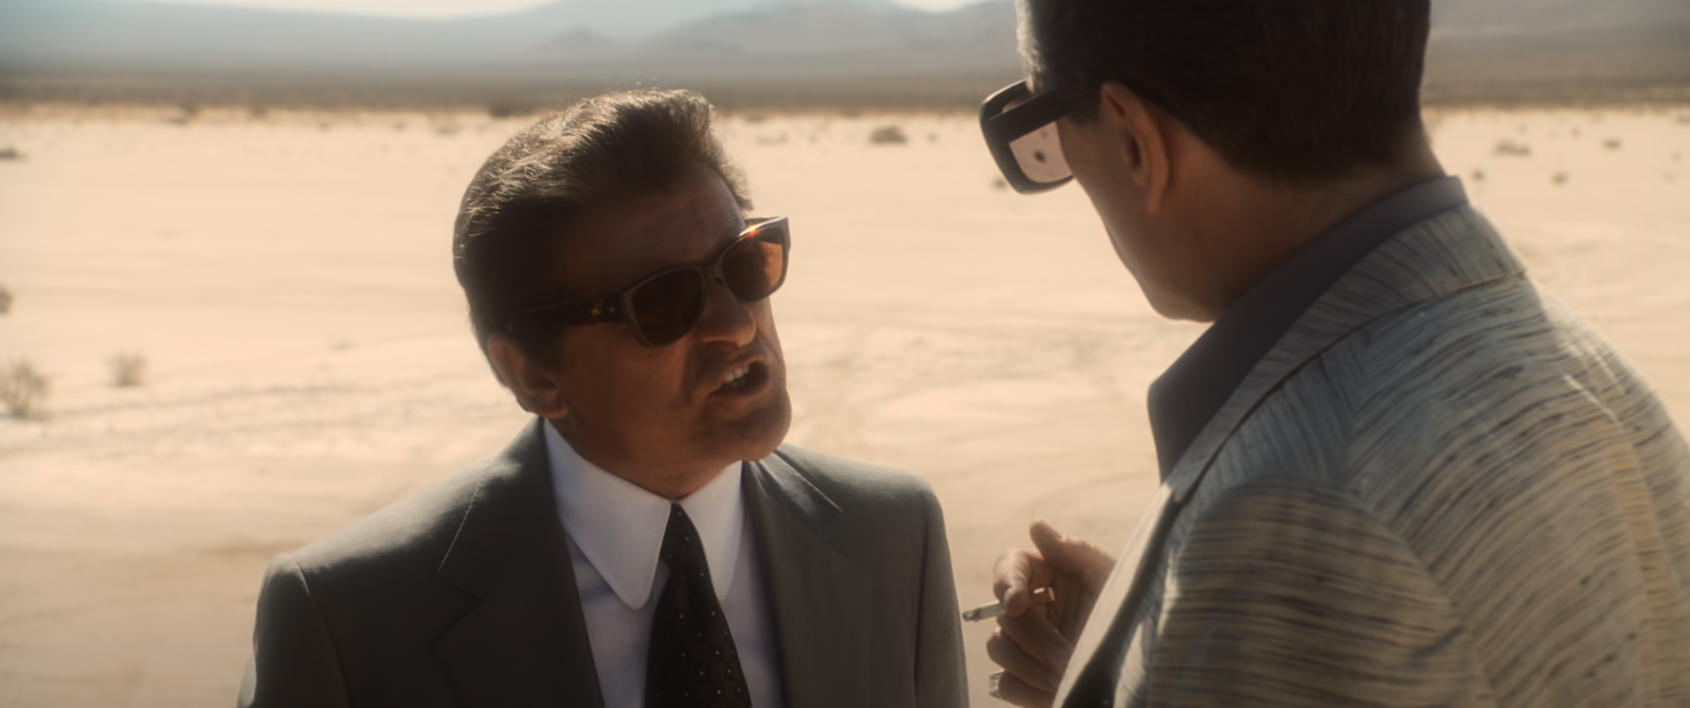 Joe Pesci yells at Robert De Niro in a desert